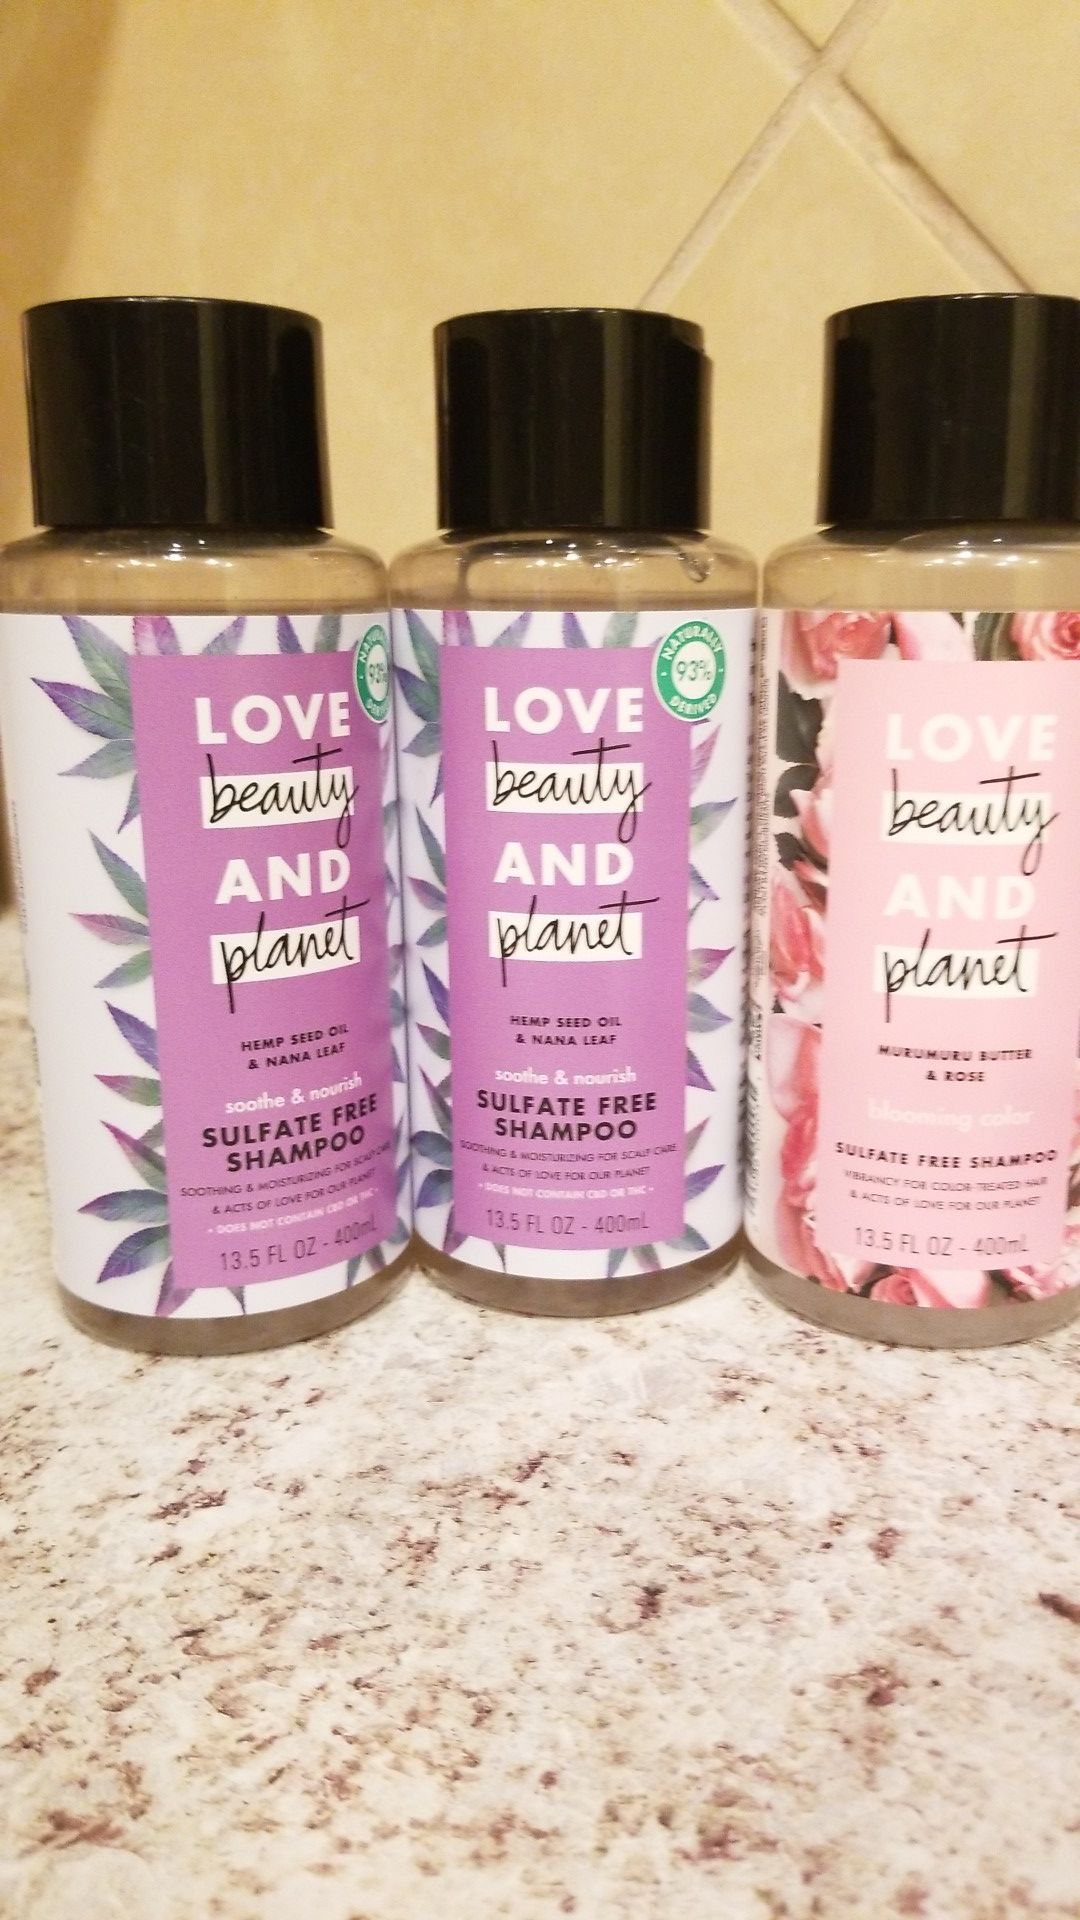 Love, beauty and planet shampoo